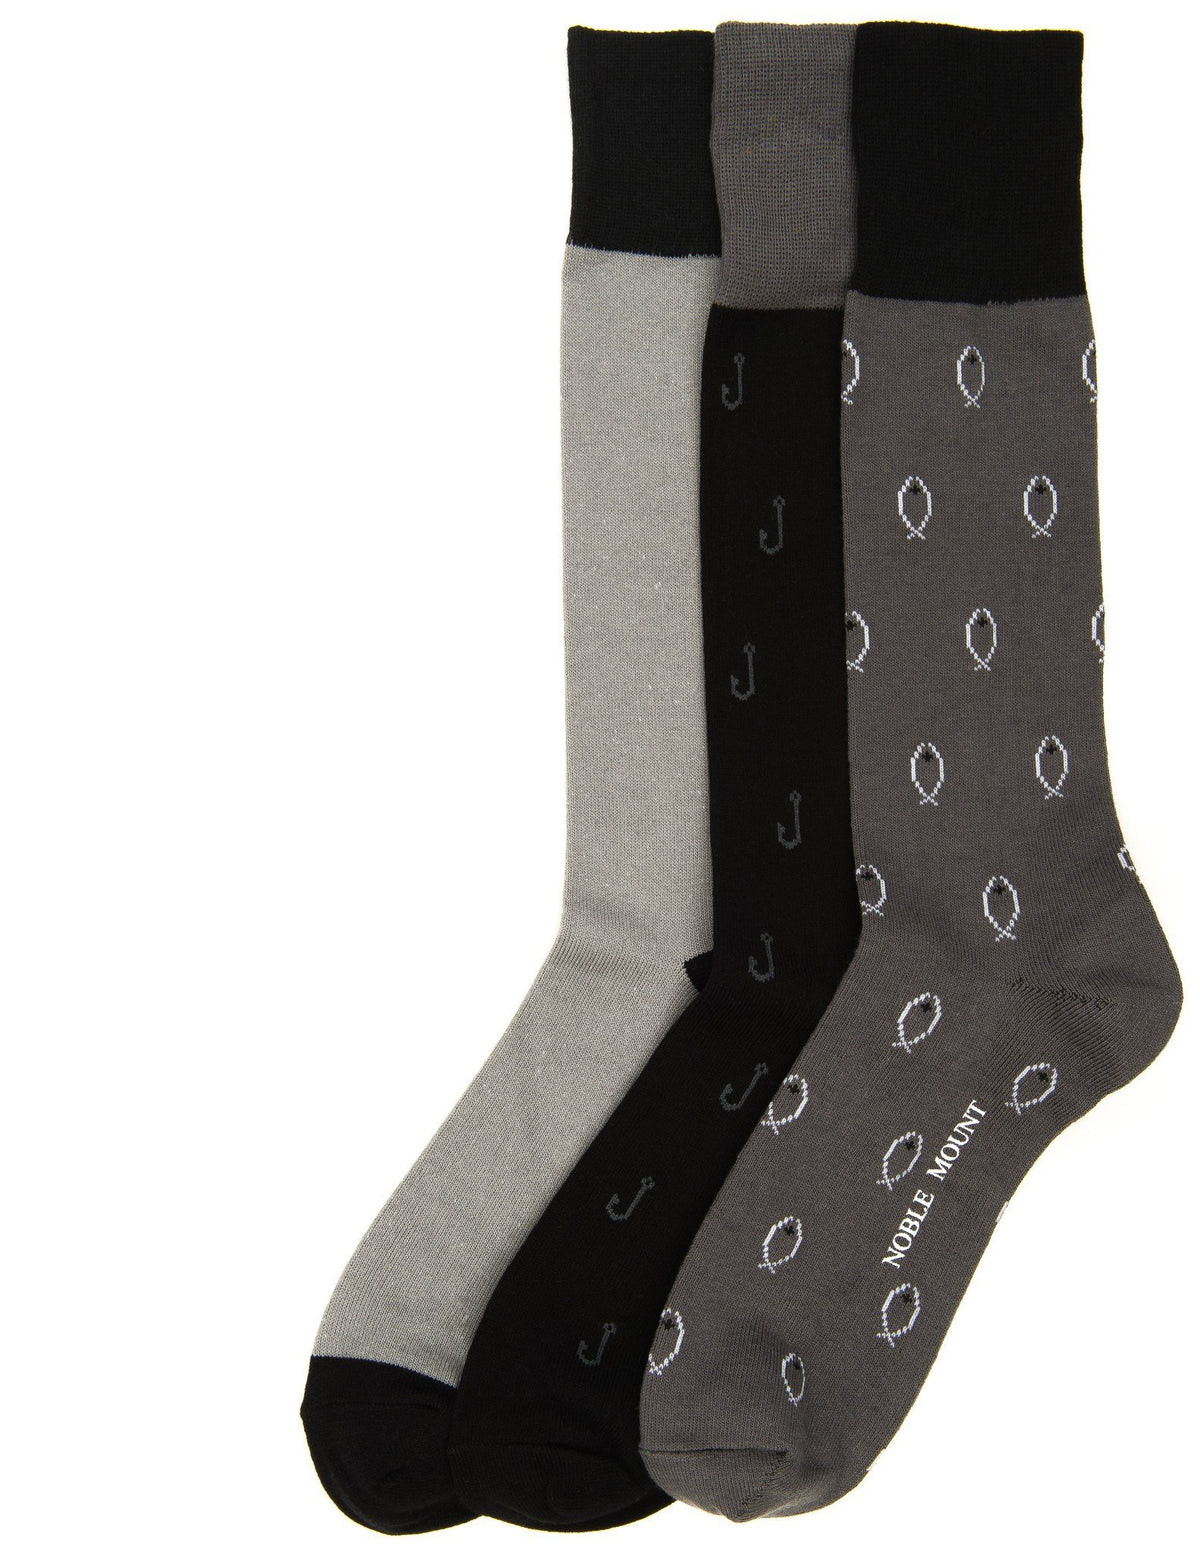 Men's Combed Cotton Dress Socks 3-Pack - Set A13